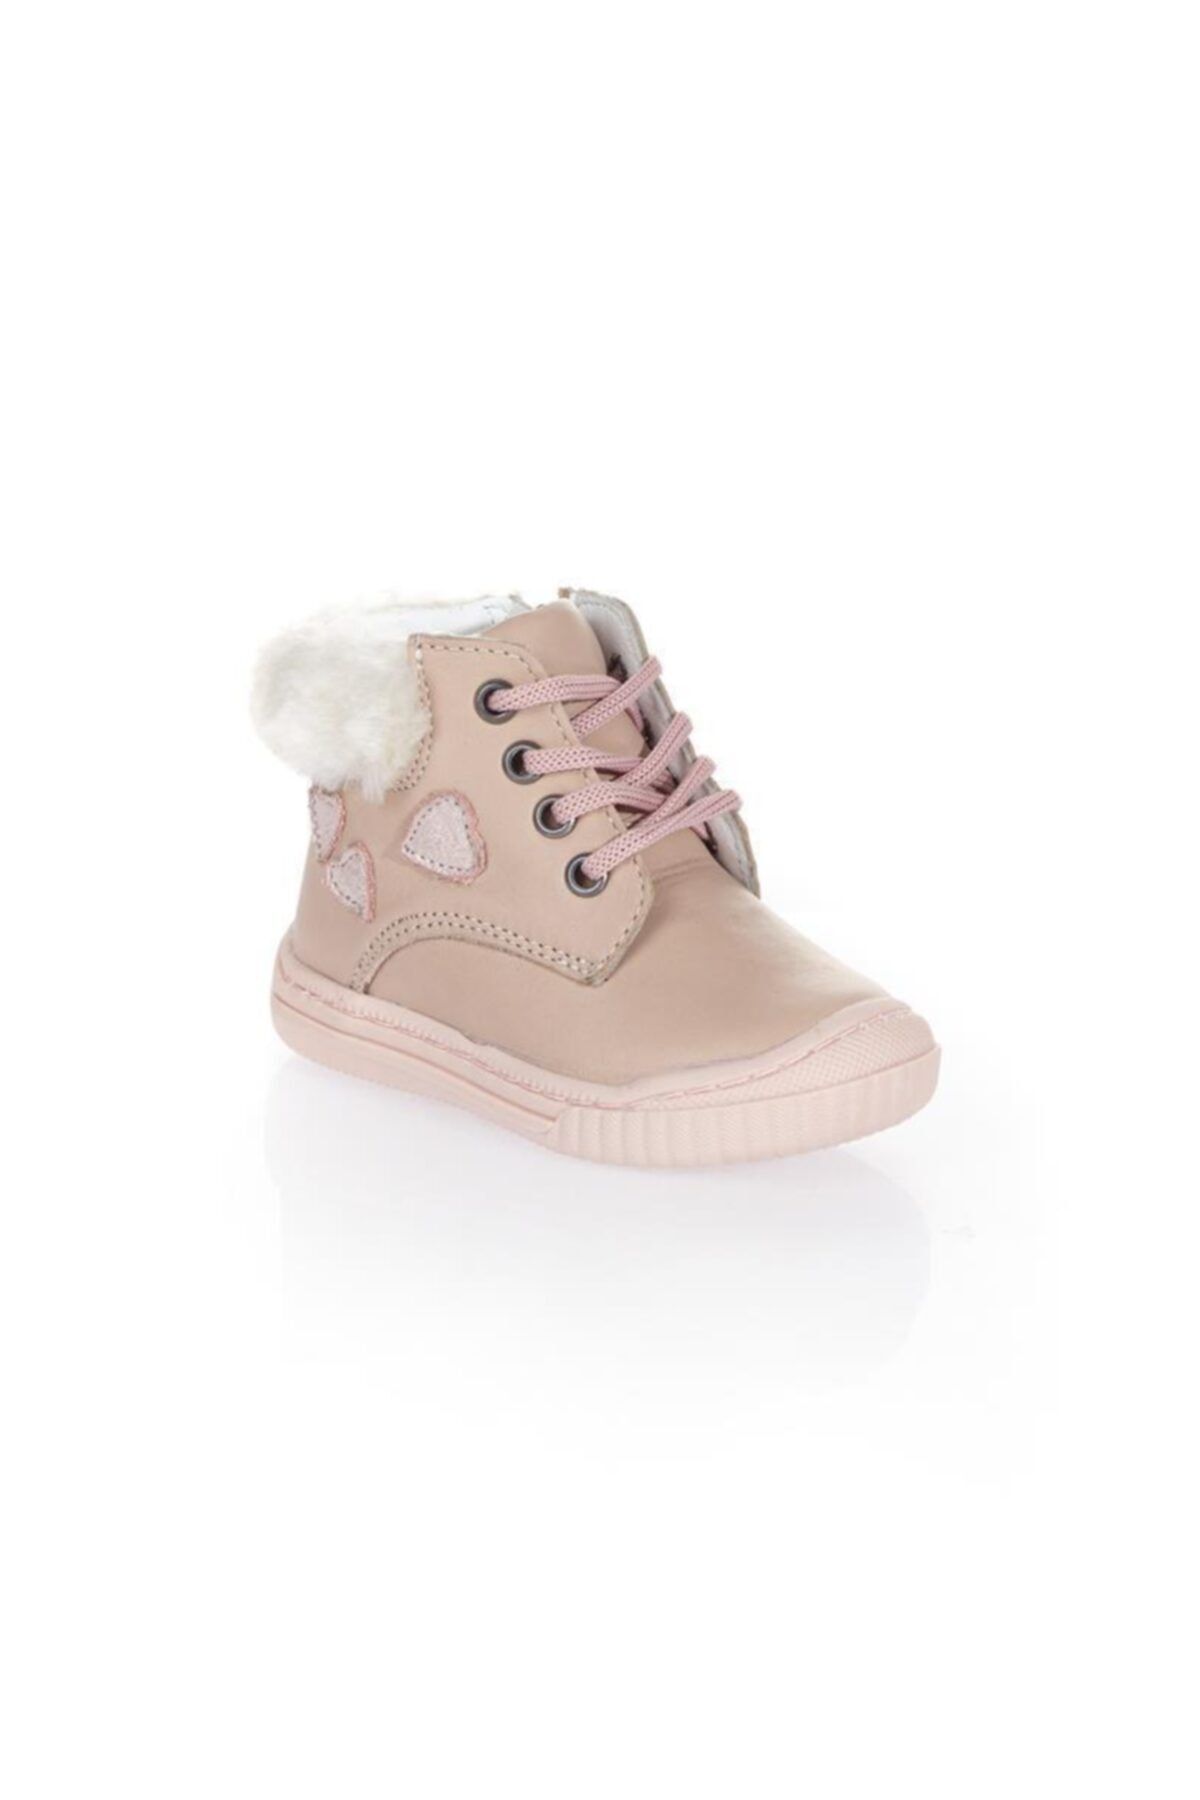 WSTARK Kız Bebek Bot Ayakkabısı Ws 3060